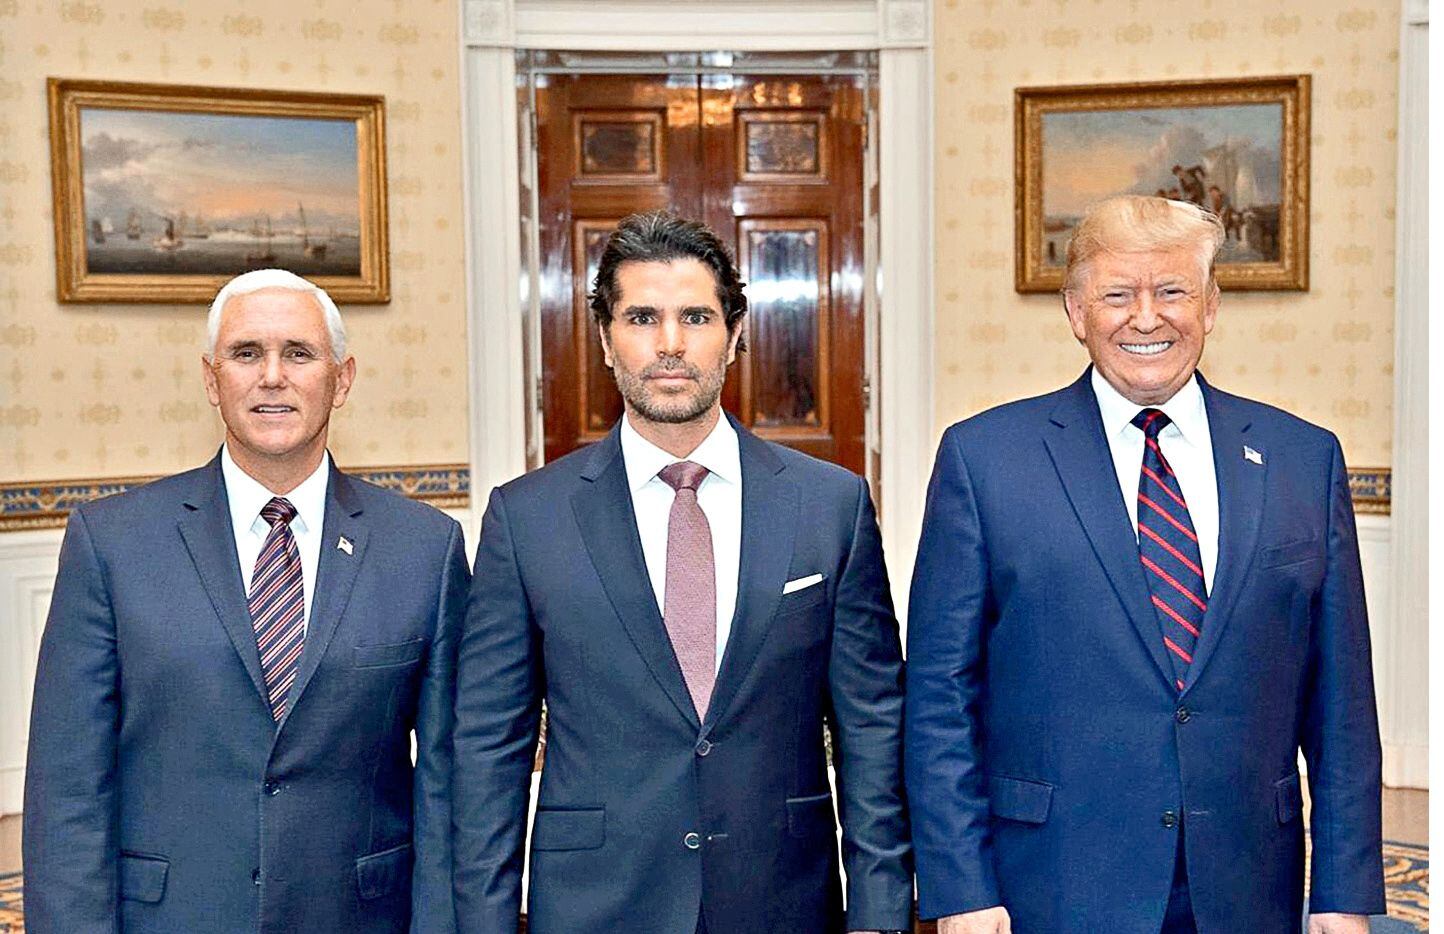 Foto de Pence, Verástegui y Trump en la Casa Blanca.